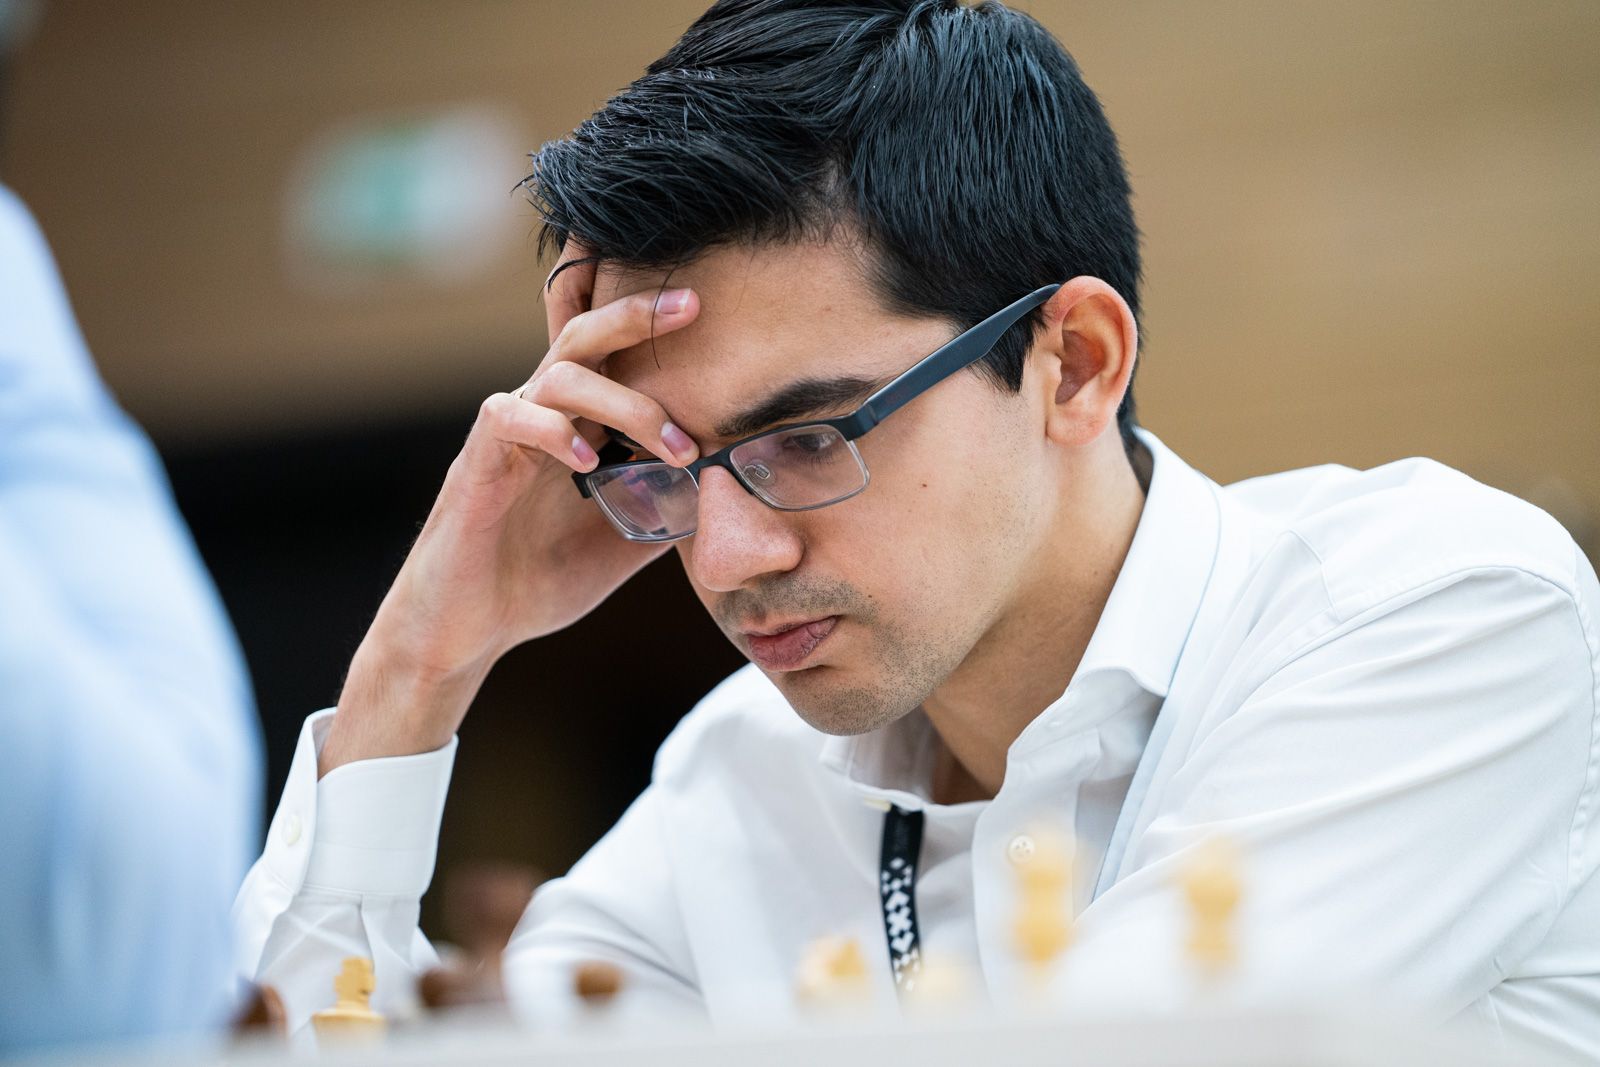 Anish Giri – Chess Grandmaster